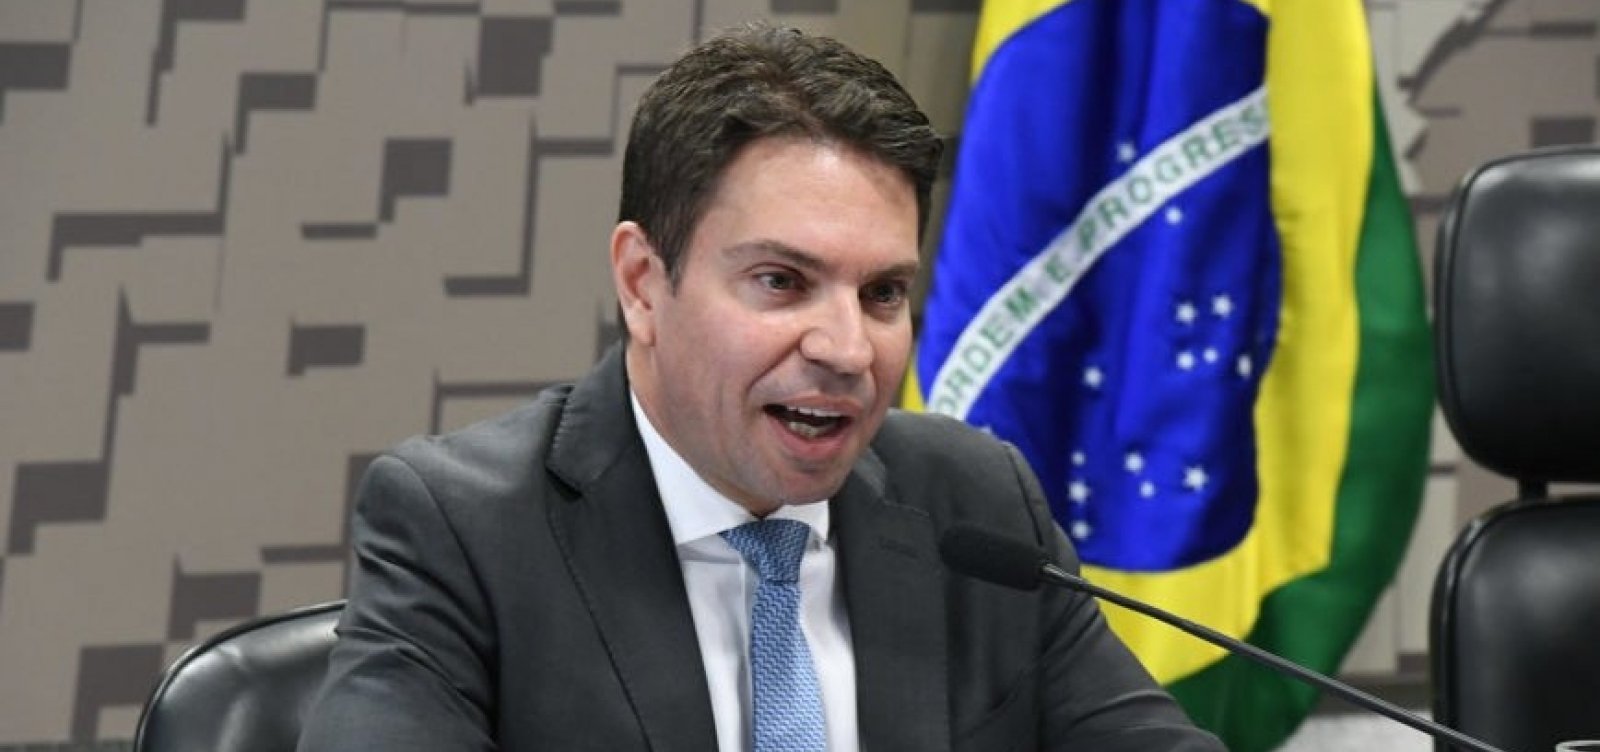 Em depoimento à PF, Ramagem diz ter ‘apreço’ pela família Bolsonaro, mas nega relação pessoal